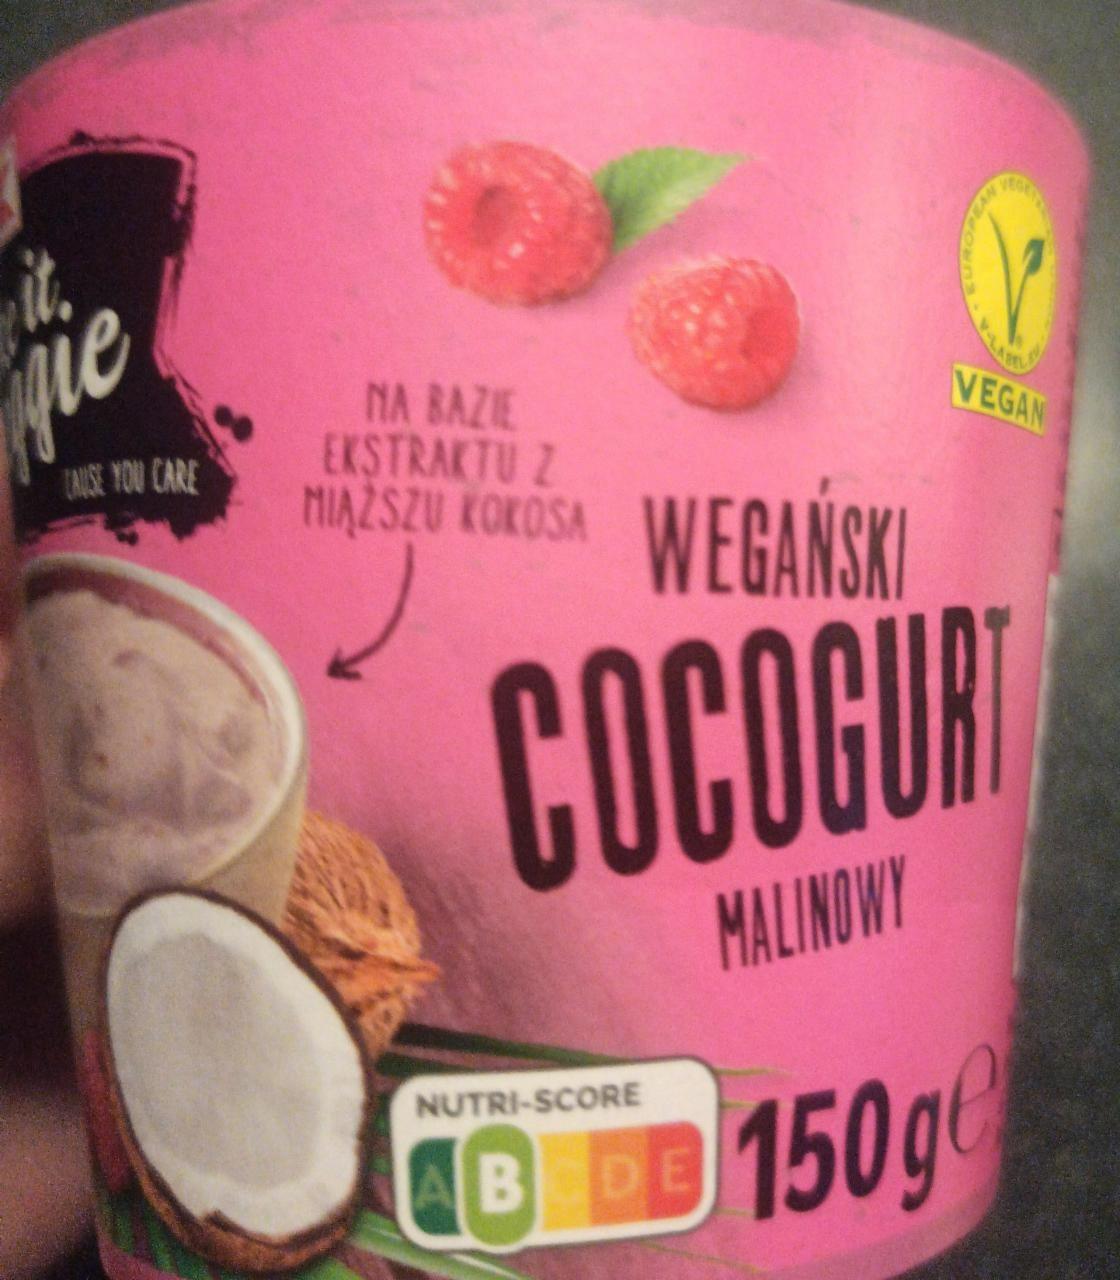 Fotografie - Wegański cocogurt malinowy K-take it veggie